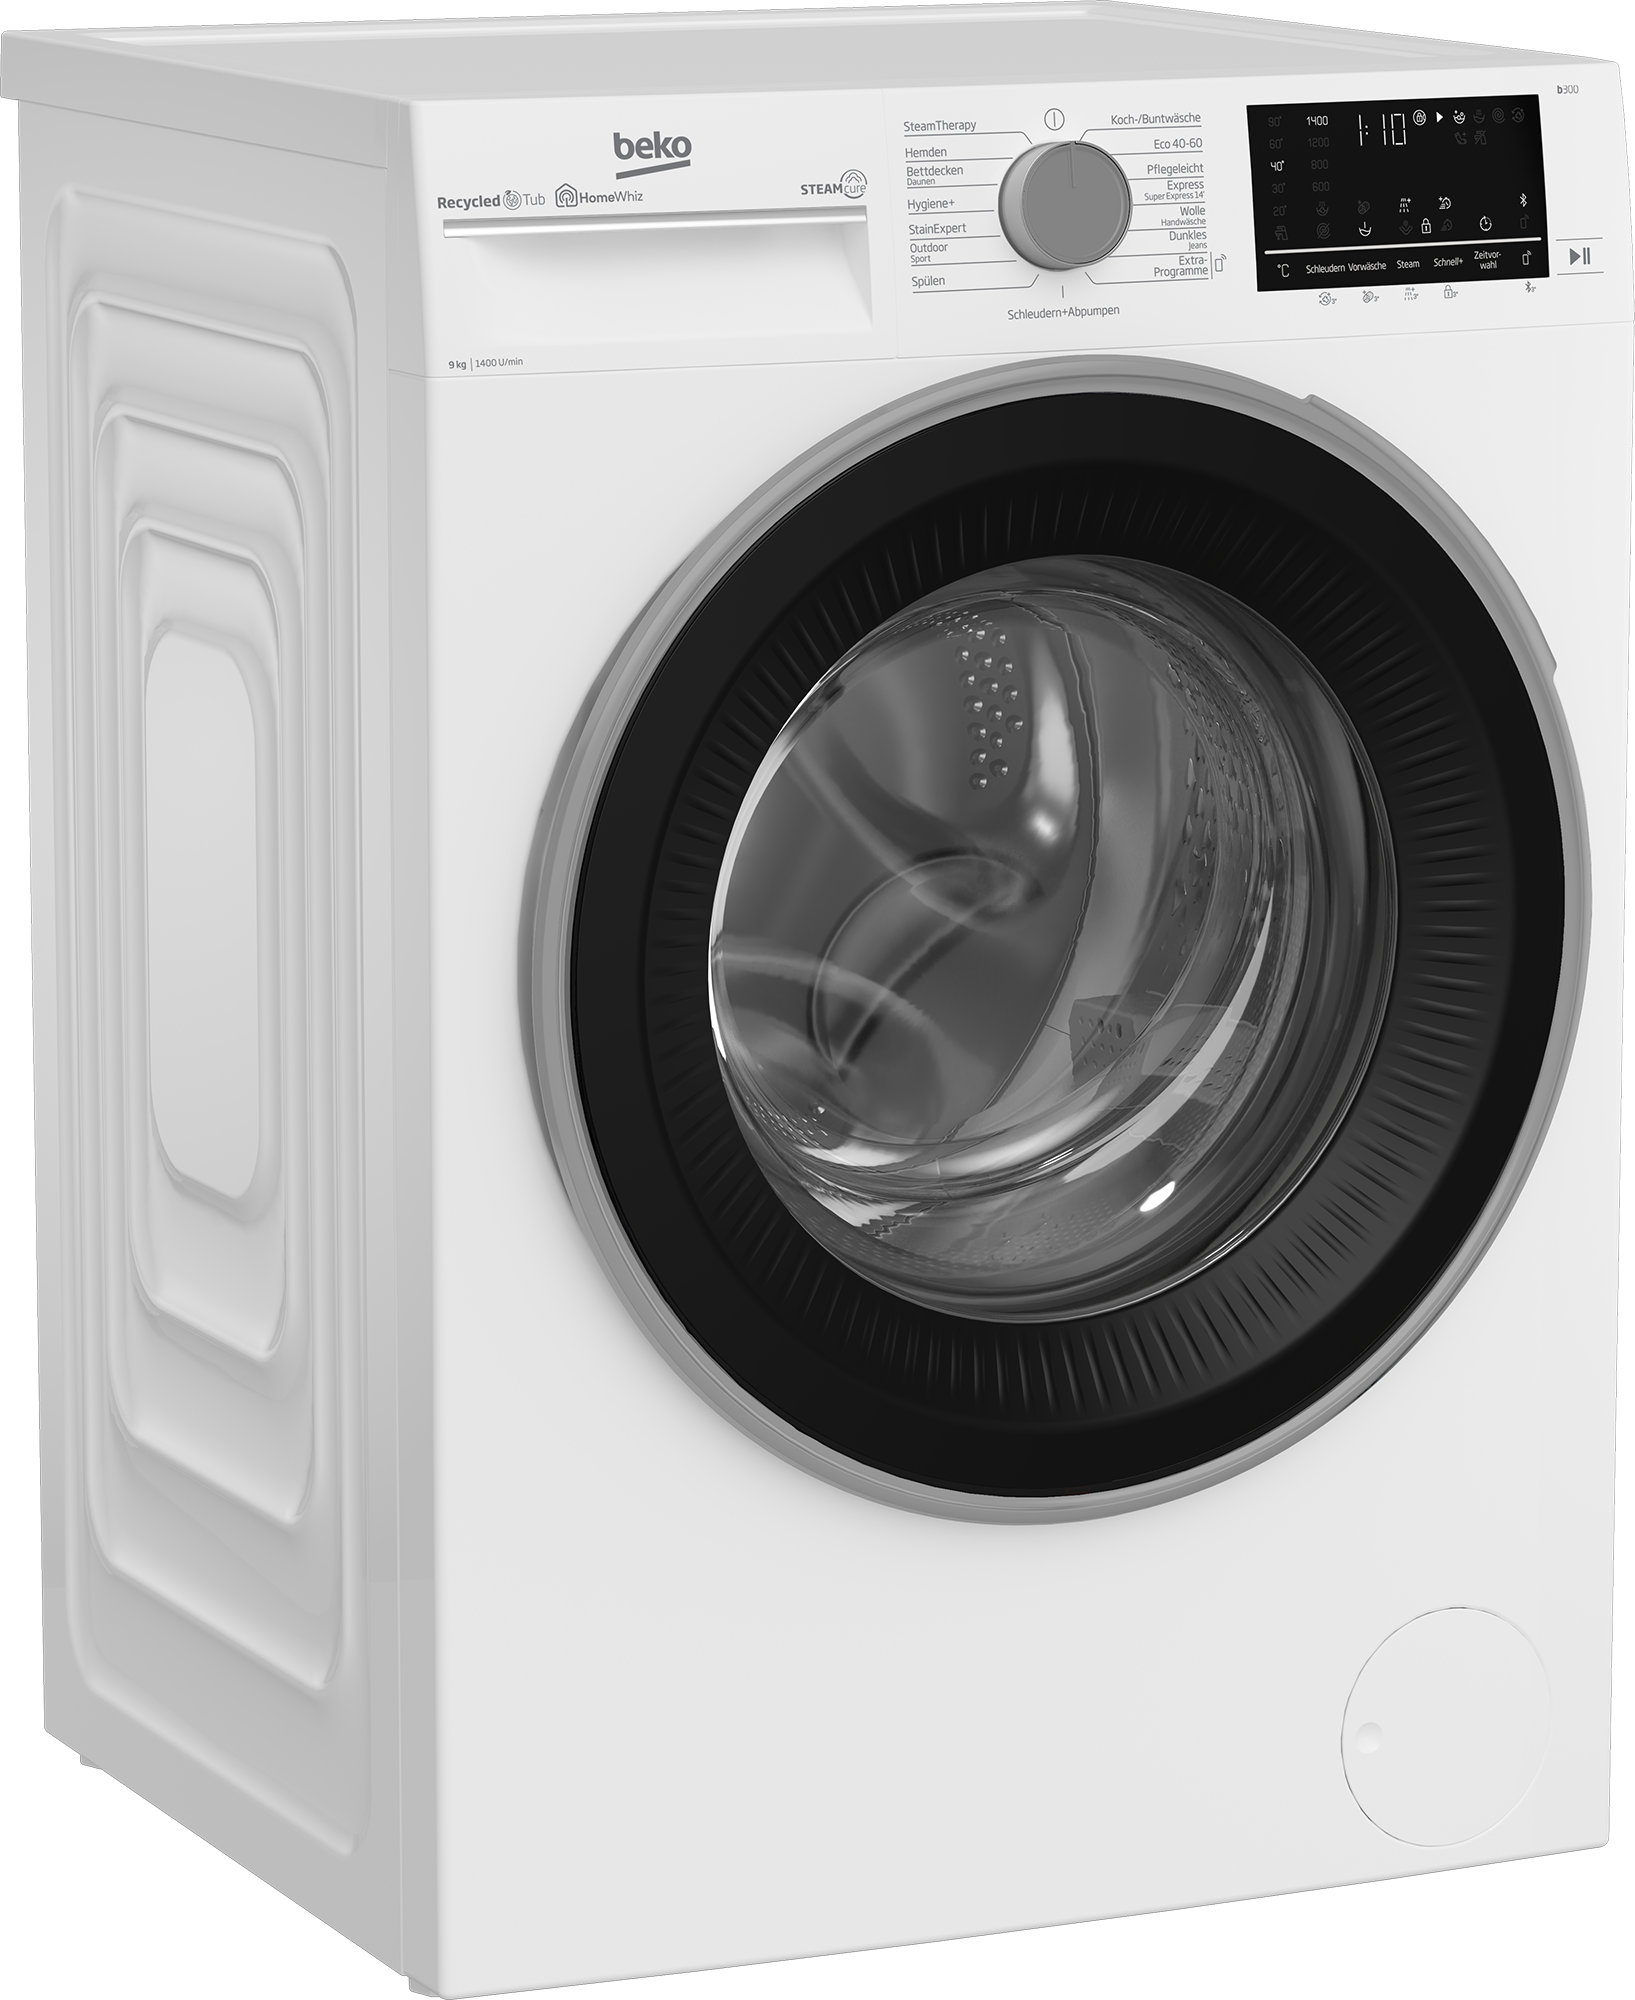 online Waschmaschine, 99% SteamCure kaufen U/min, b300, BEKO 1400 allergenfrei - kg, B3WFU59415W2, 9